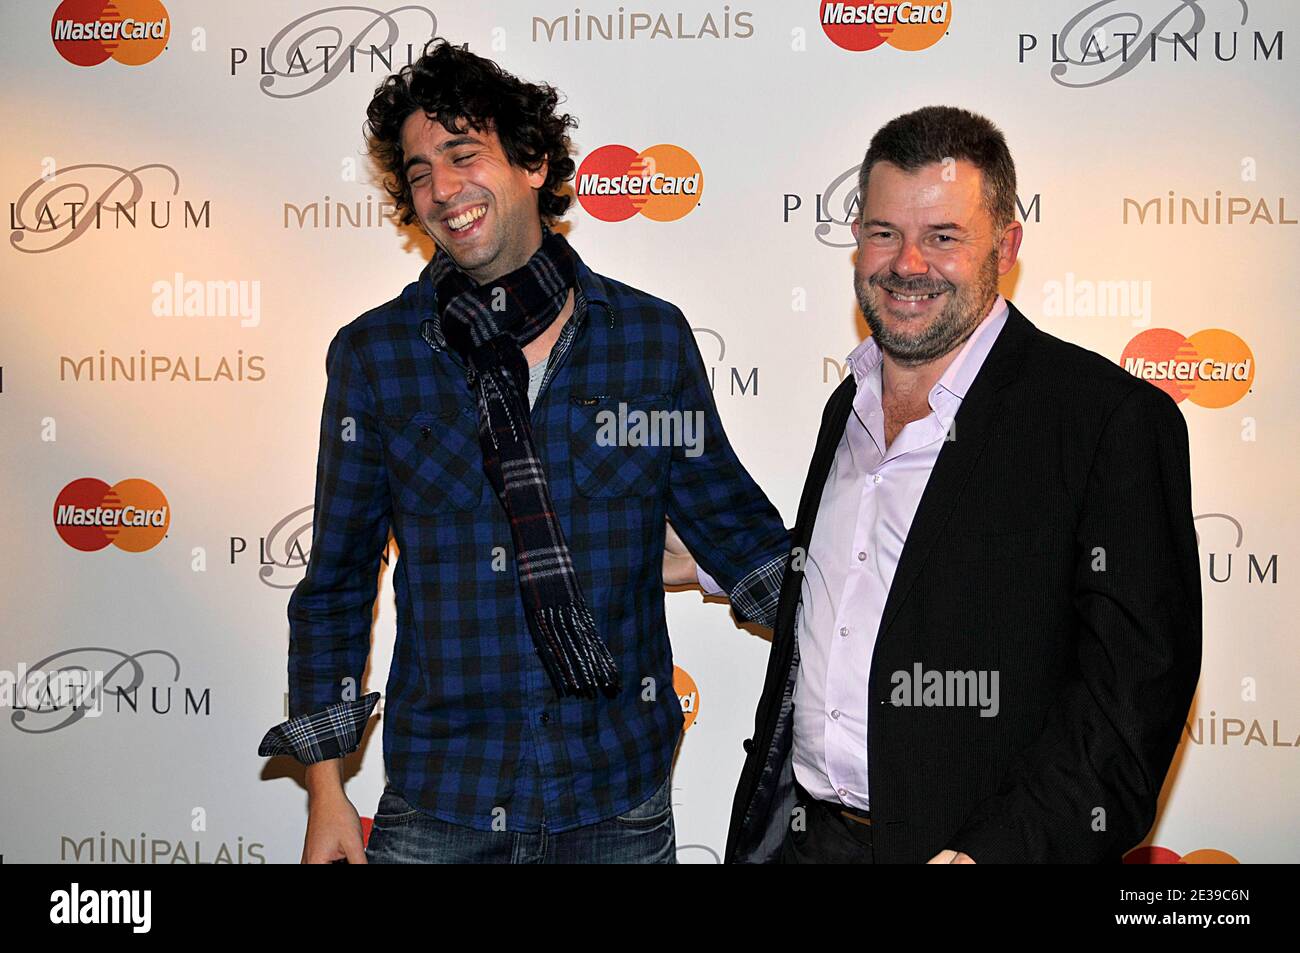 Eric Naulleau und Max Boublil nehmen am 4. Oktober 2010 am Abend der Platinum MasterCard im Grand Palais in Paris Teil. Foto von Thierry Plessis/ABACAPRESS.COM Stockfoto